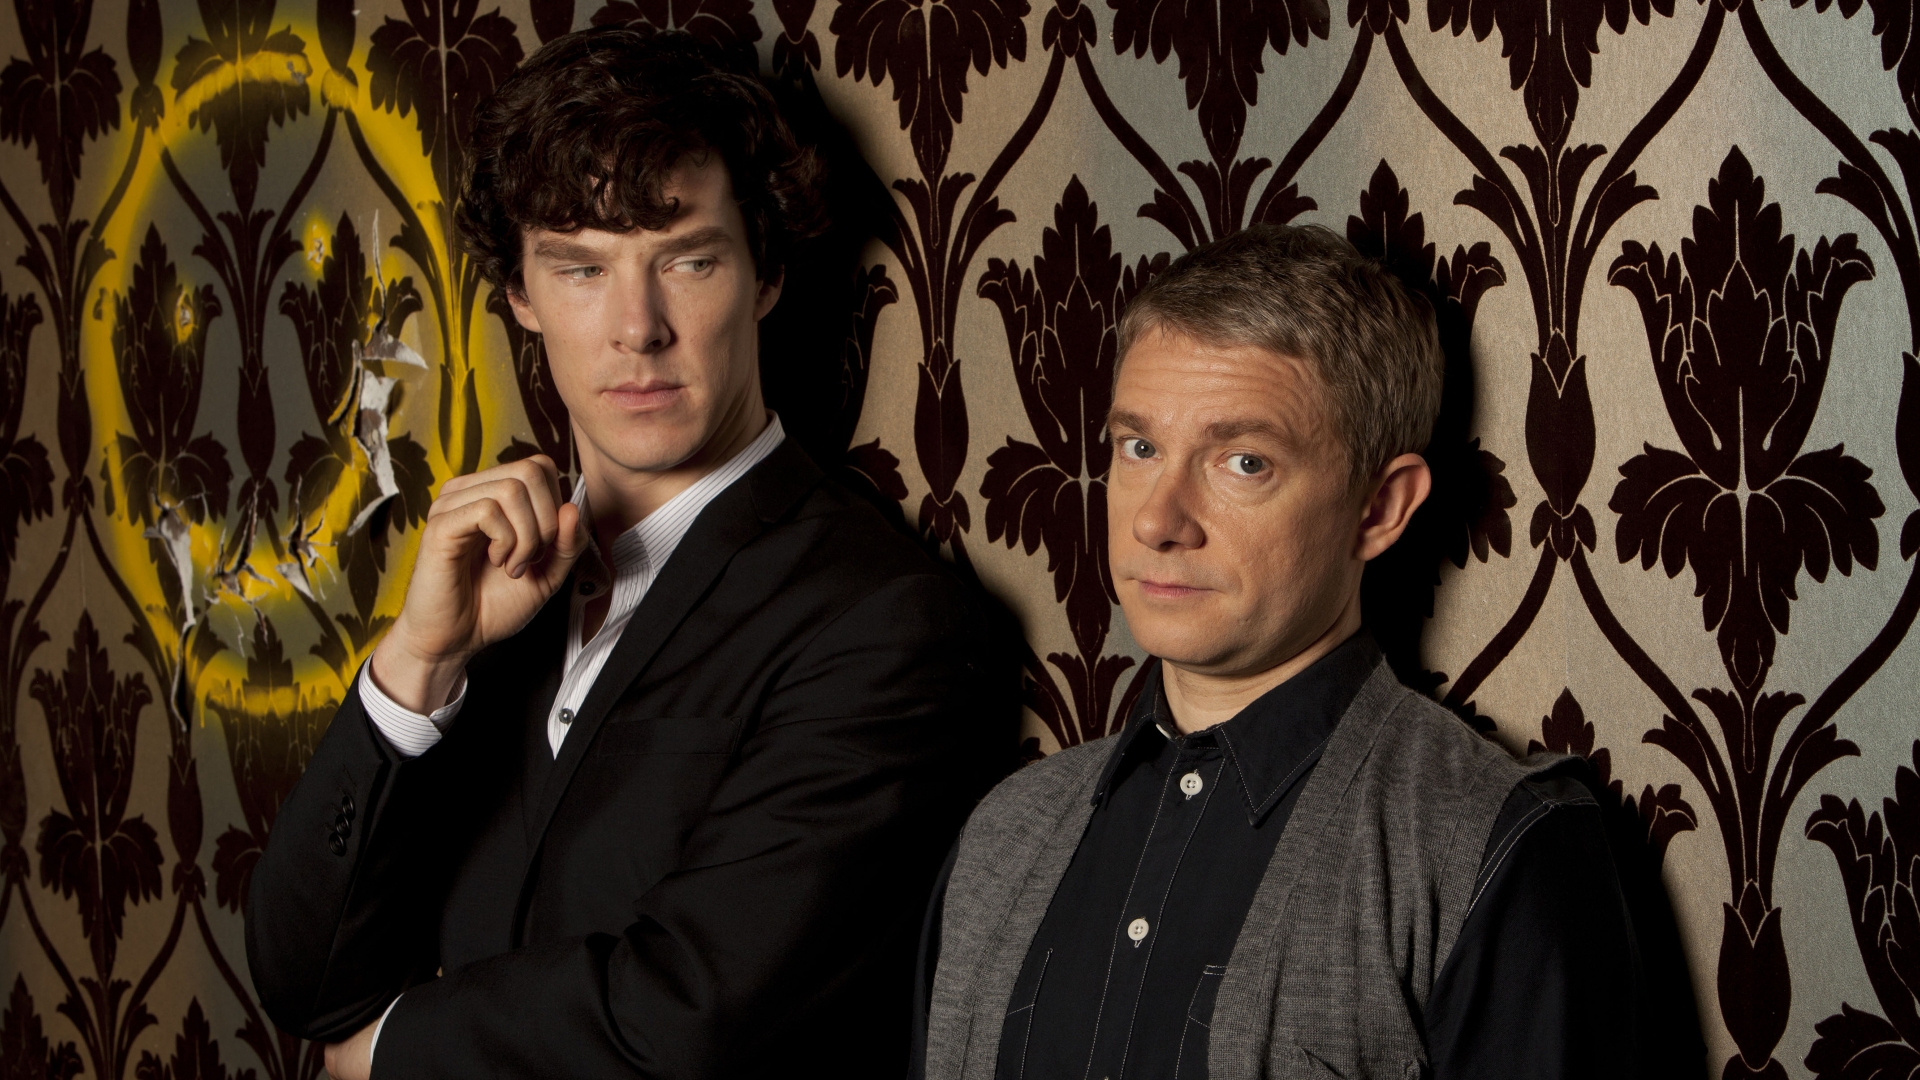 Sherlock and John for 1920 x 1080 HDTV 1080p resolution